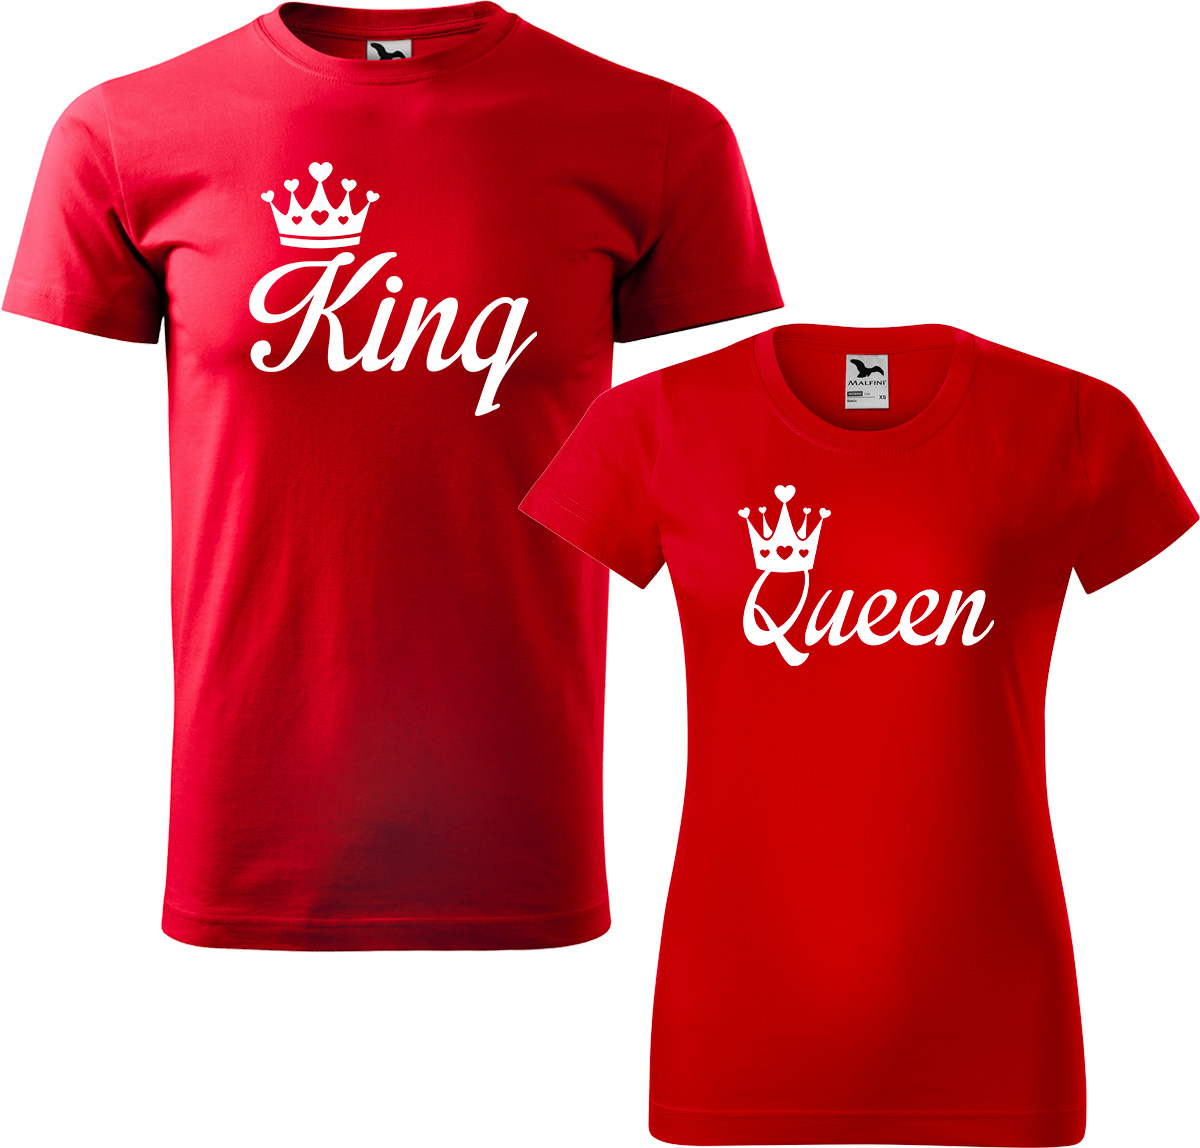 Trička pro páry - King a queen Barva: Červená (07), Velikost dámské tričko: 3XL, Velikost pánské tričko: 3XL